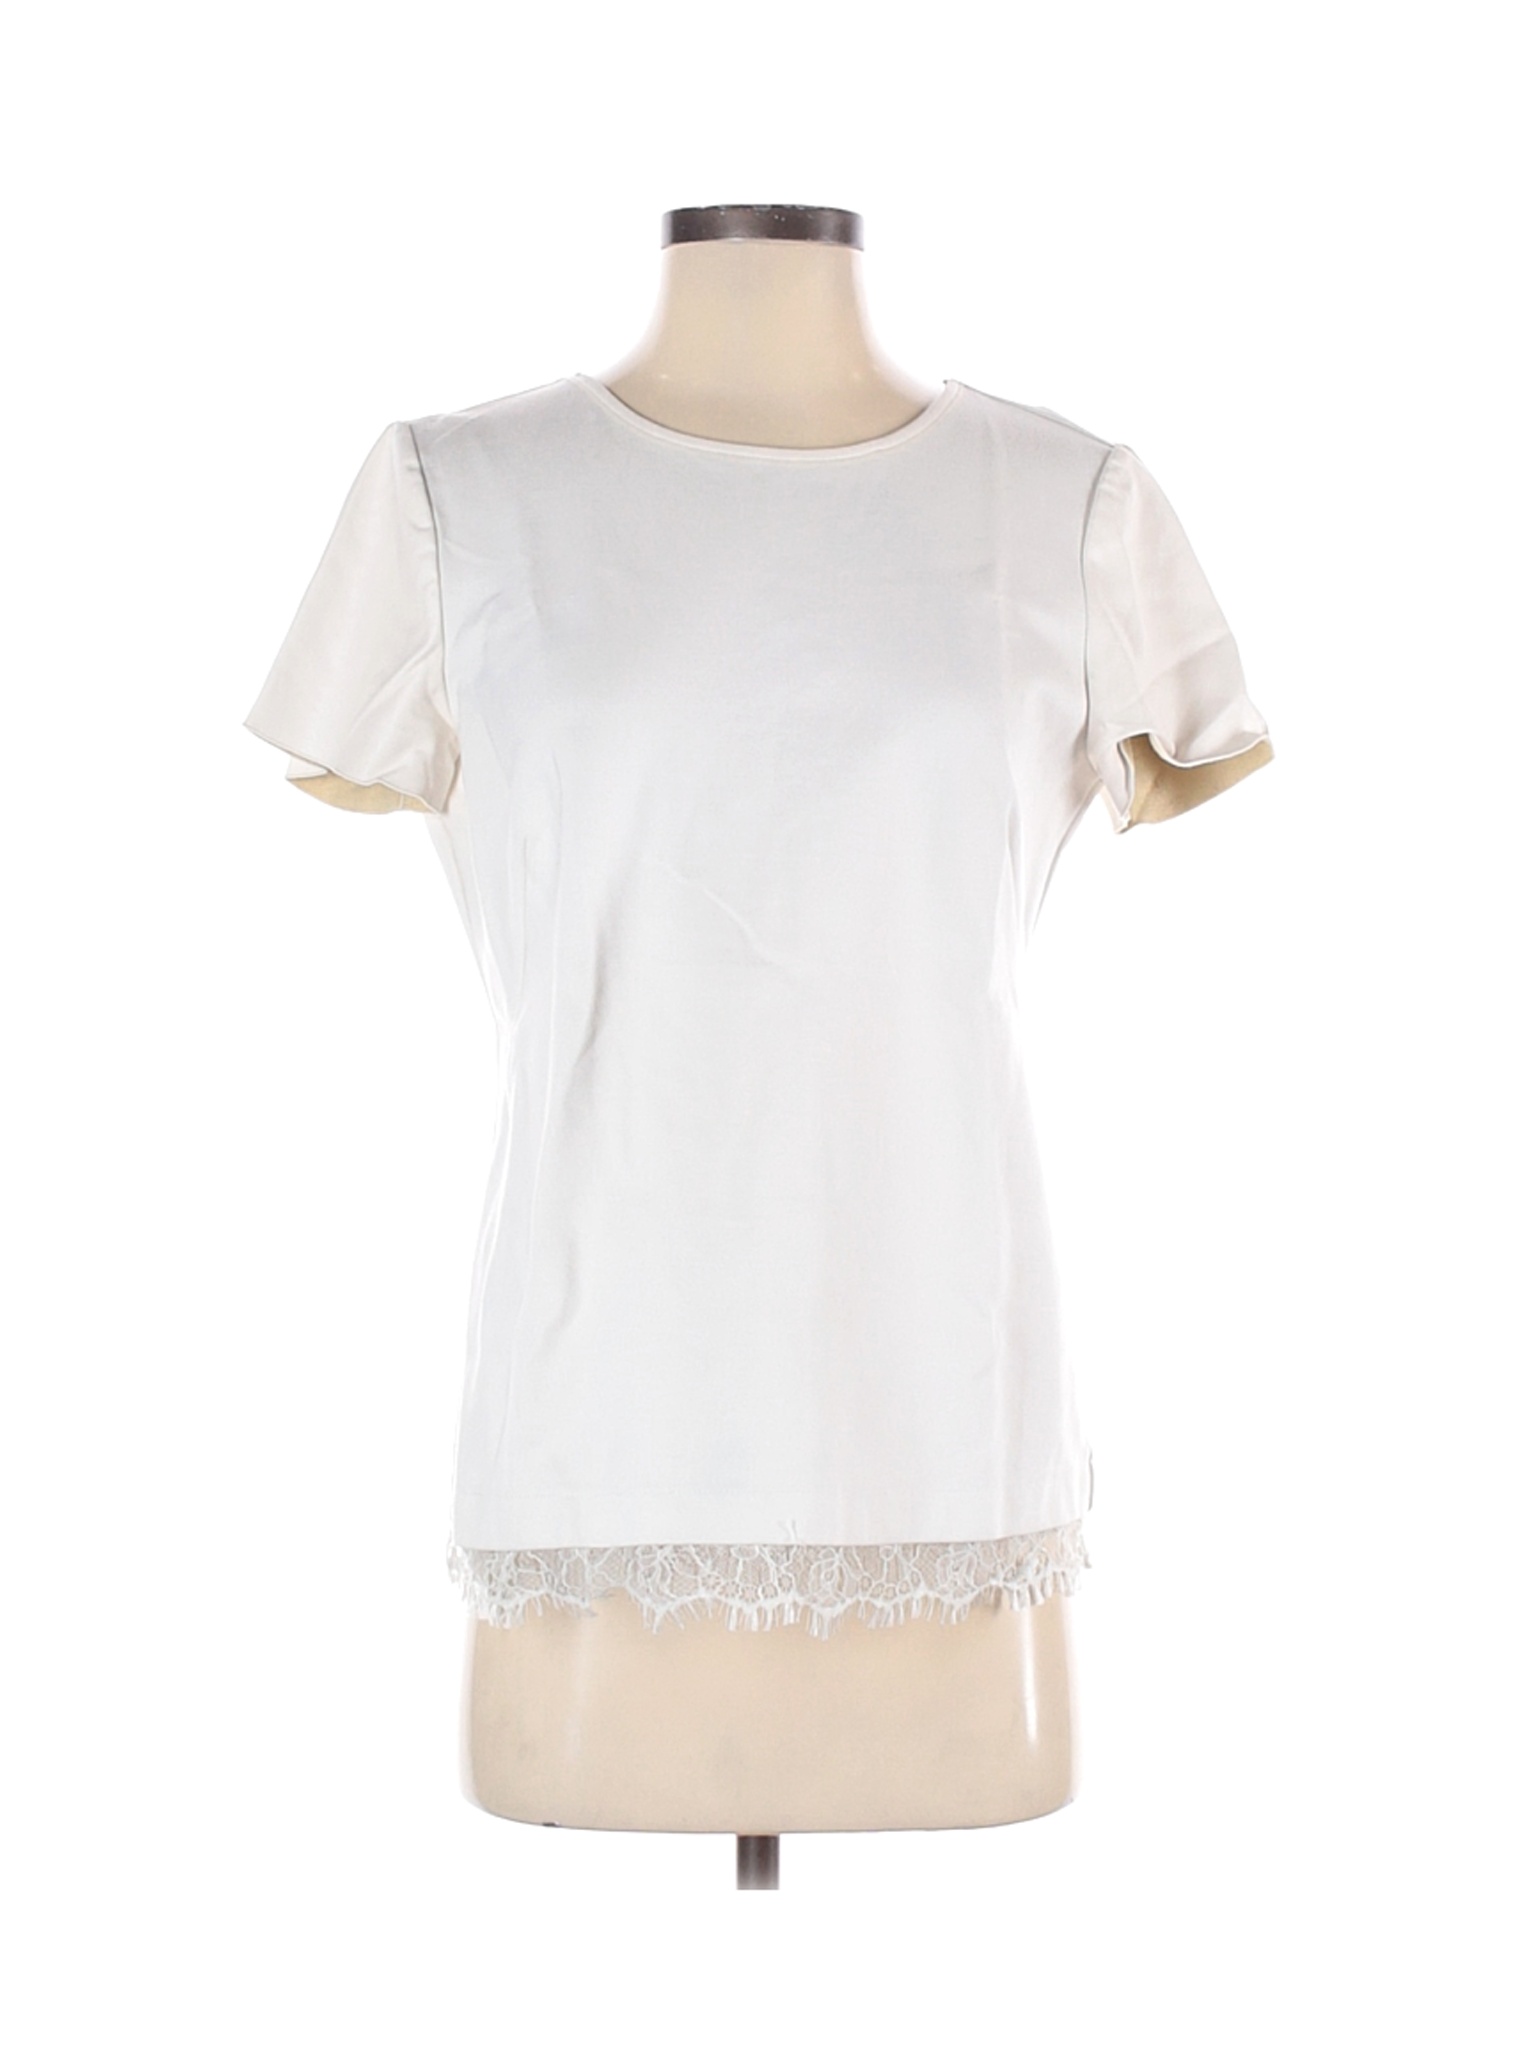 Ann Taylor Women White Short Sleeve Top S | eBay